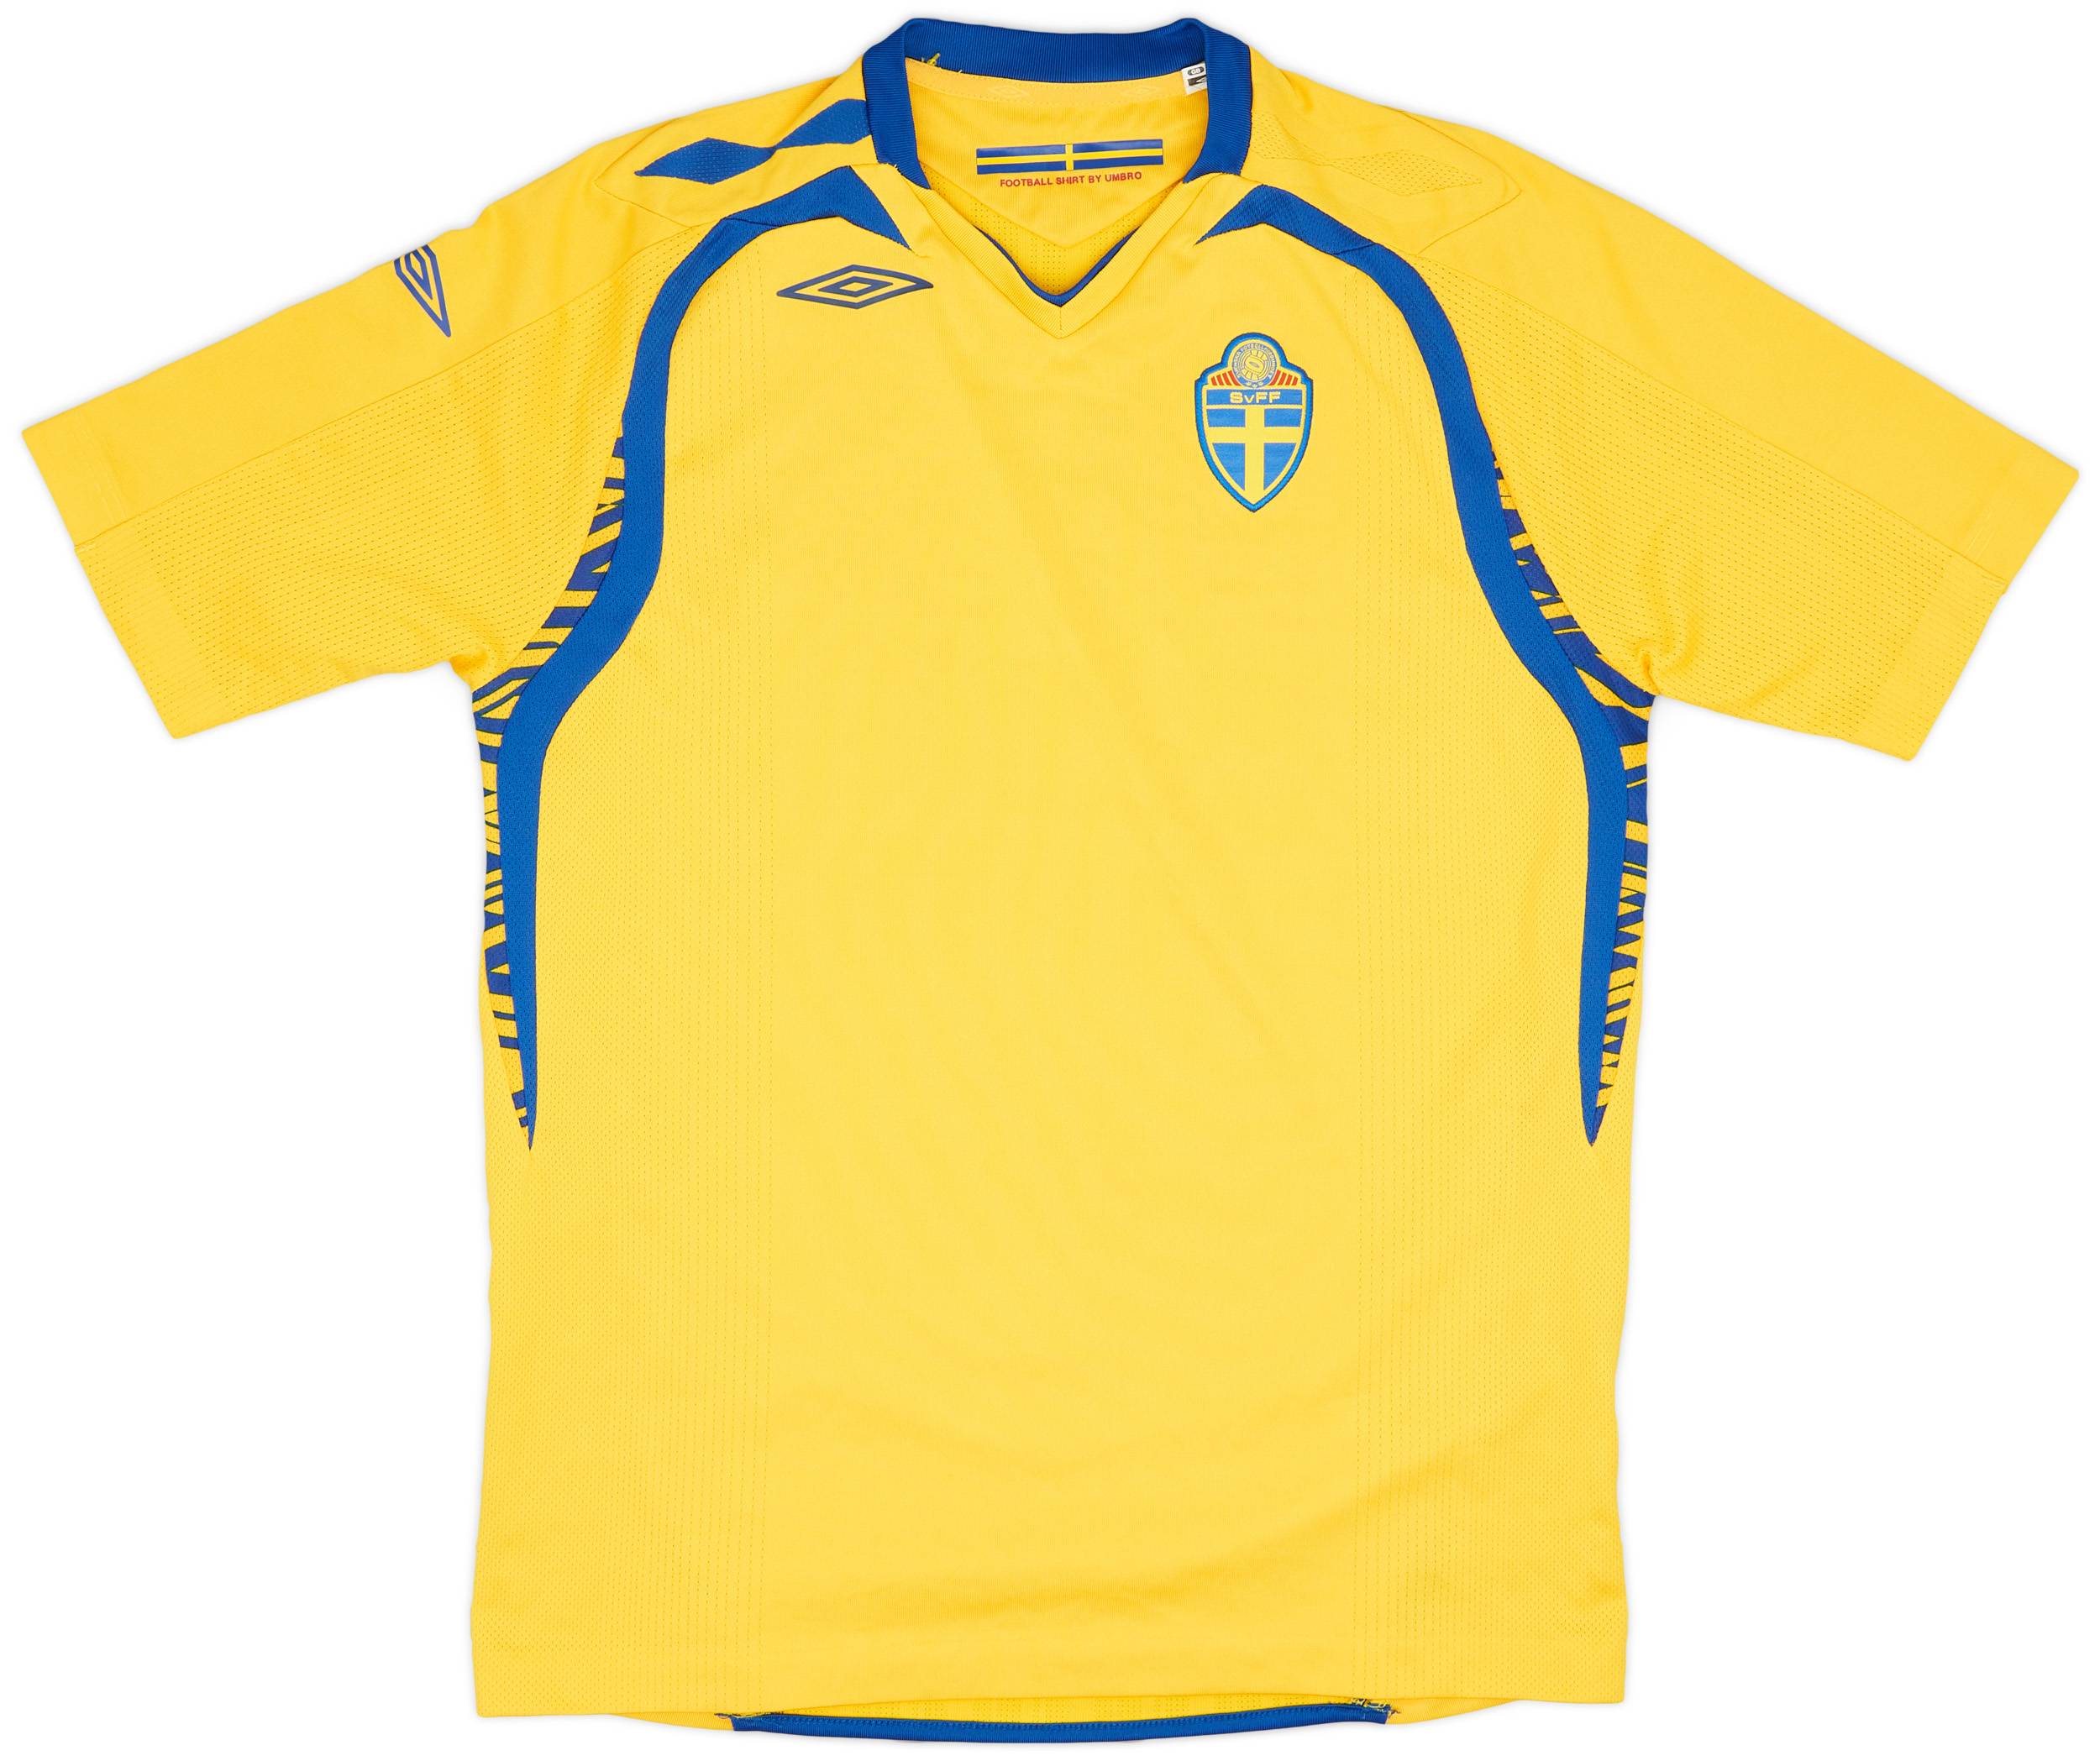 2008-09 Sweden Home Shirt - 9/10 - (XS)